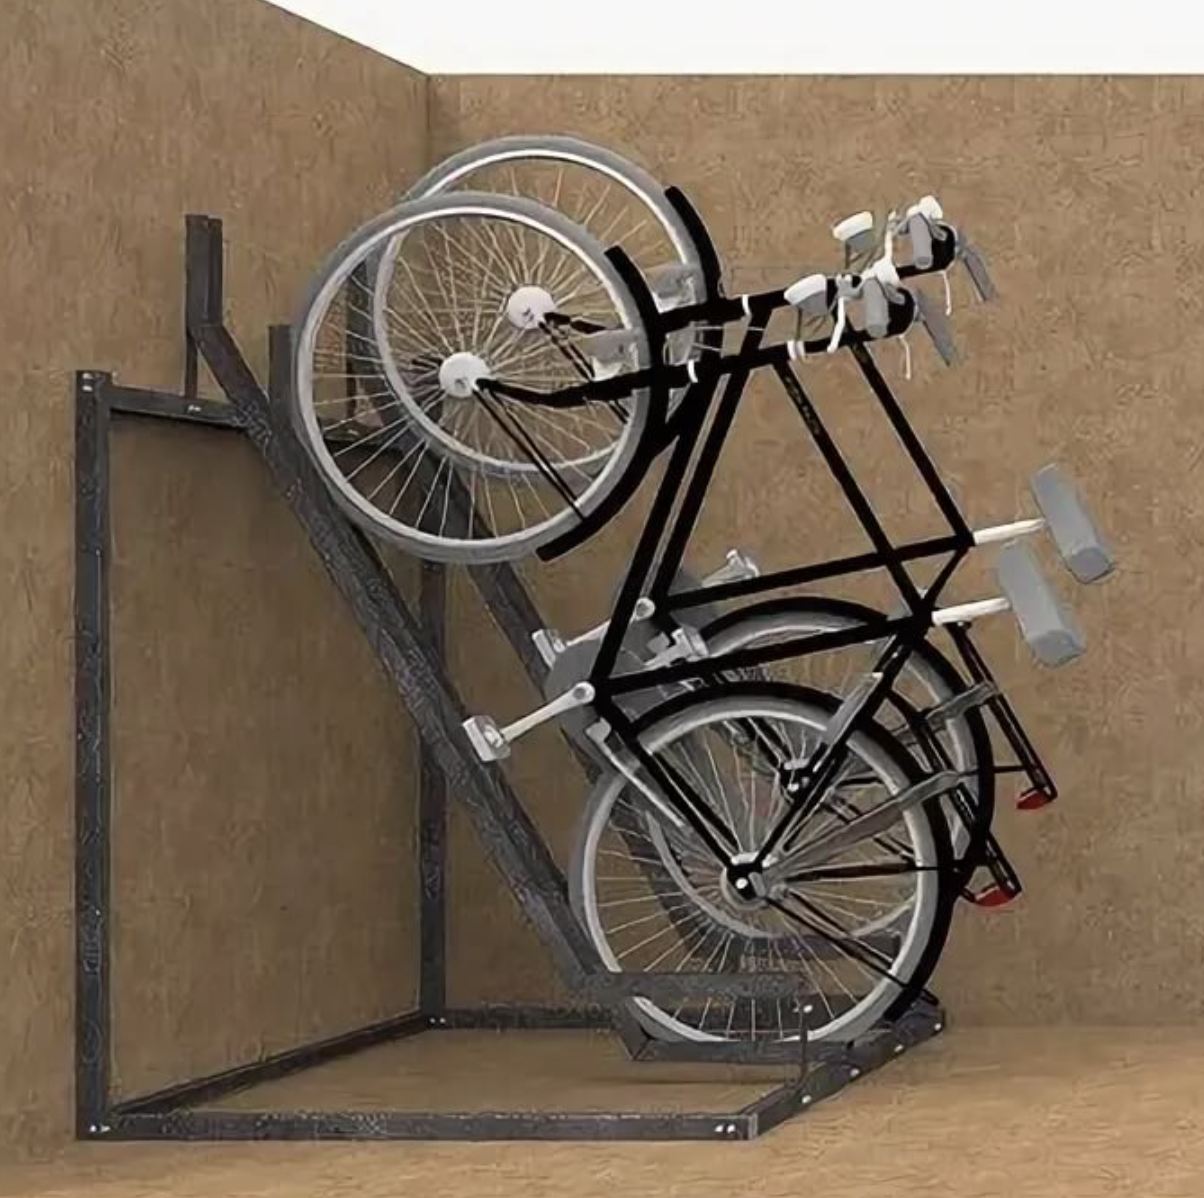 Как подвесить велосипед к потолку: виды потолочных креплений